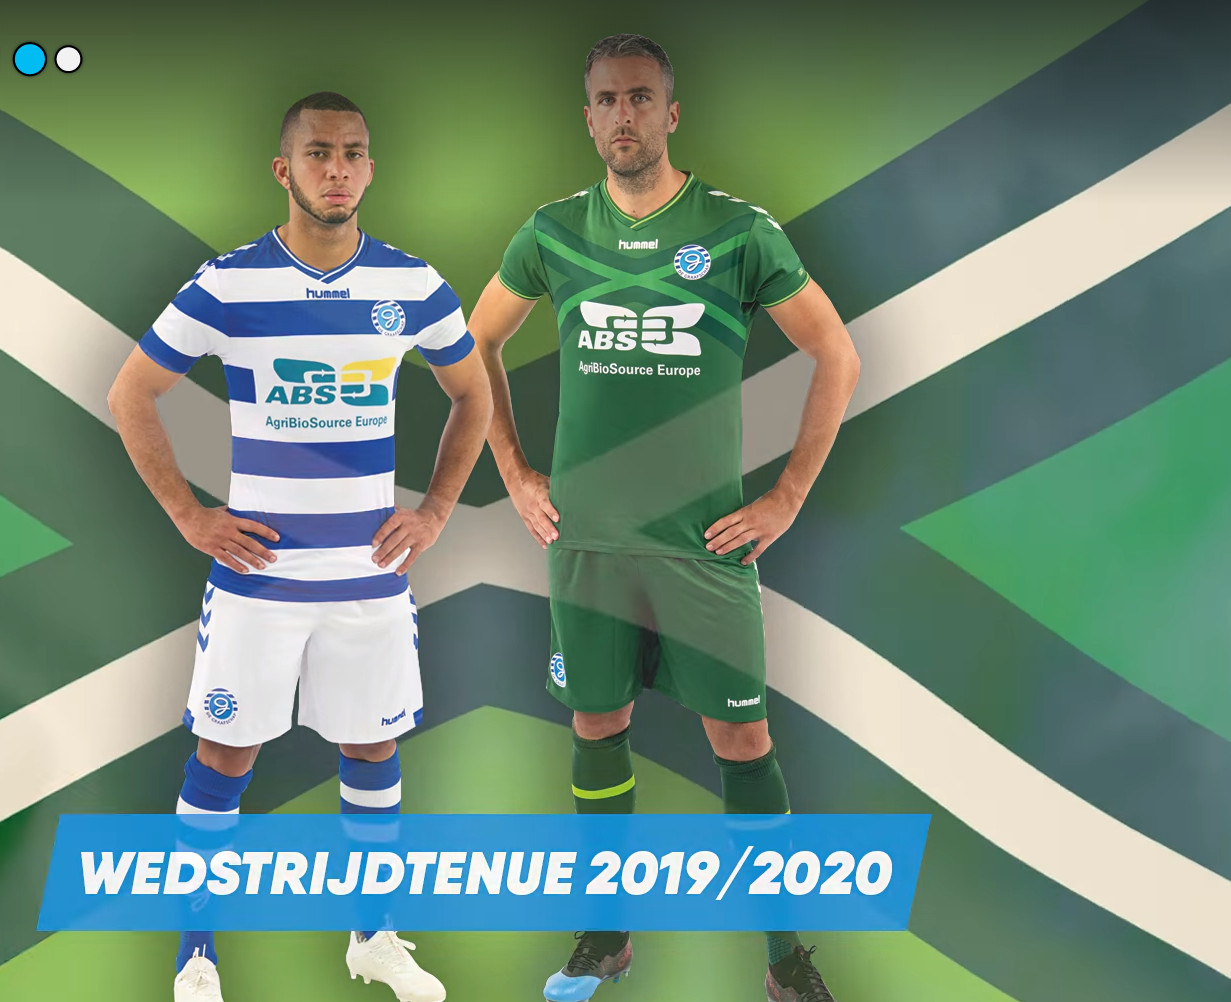 buste Imperial Verwachten De Graafschap voetbalshirts 2019-2020 - Voetbalshirts.com